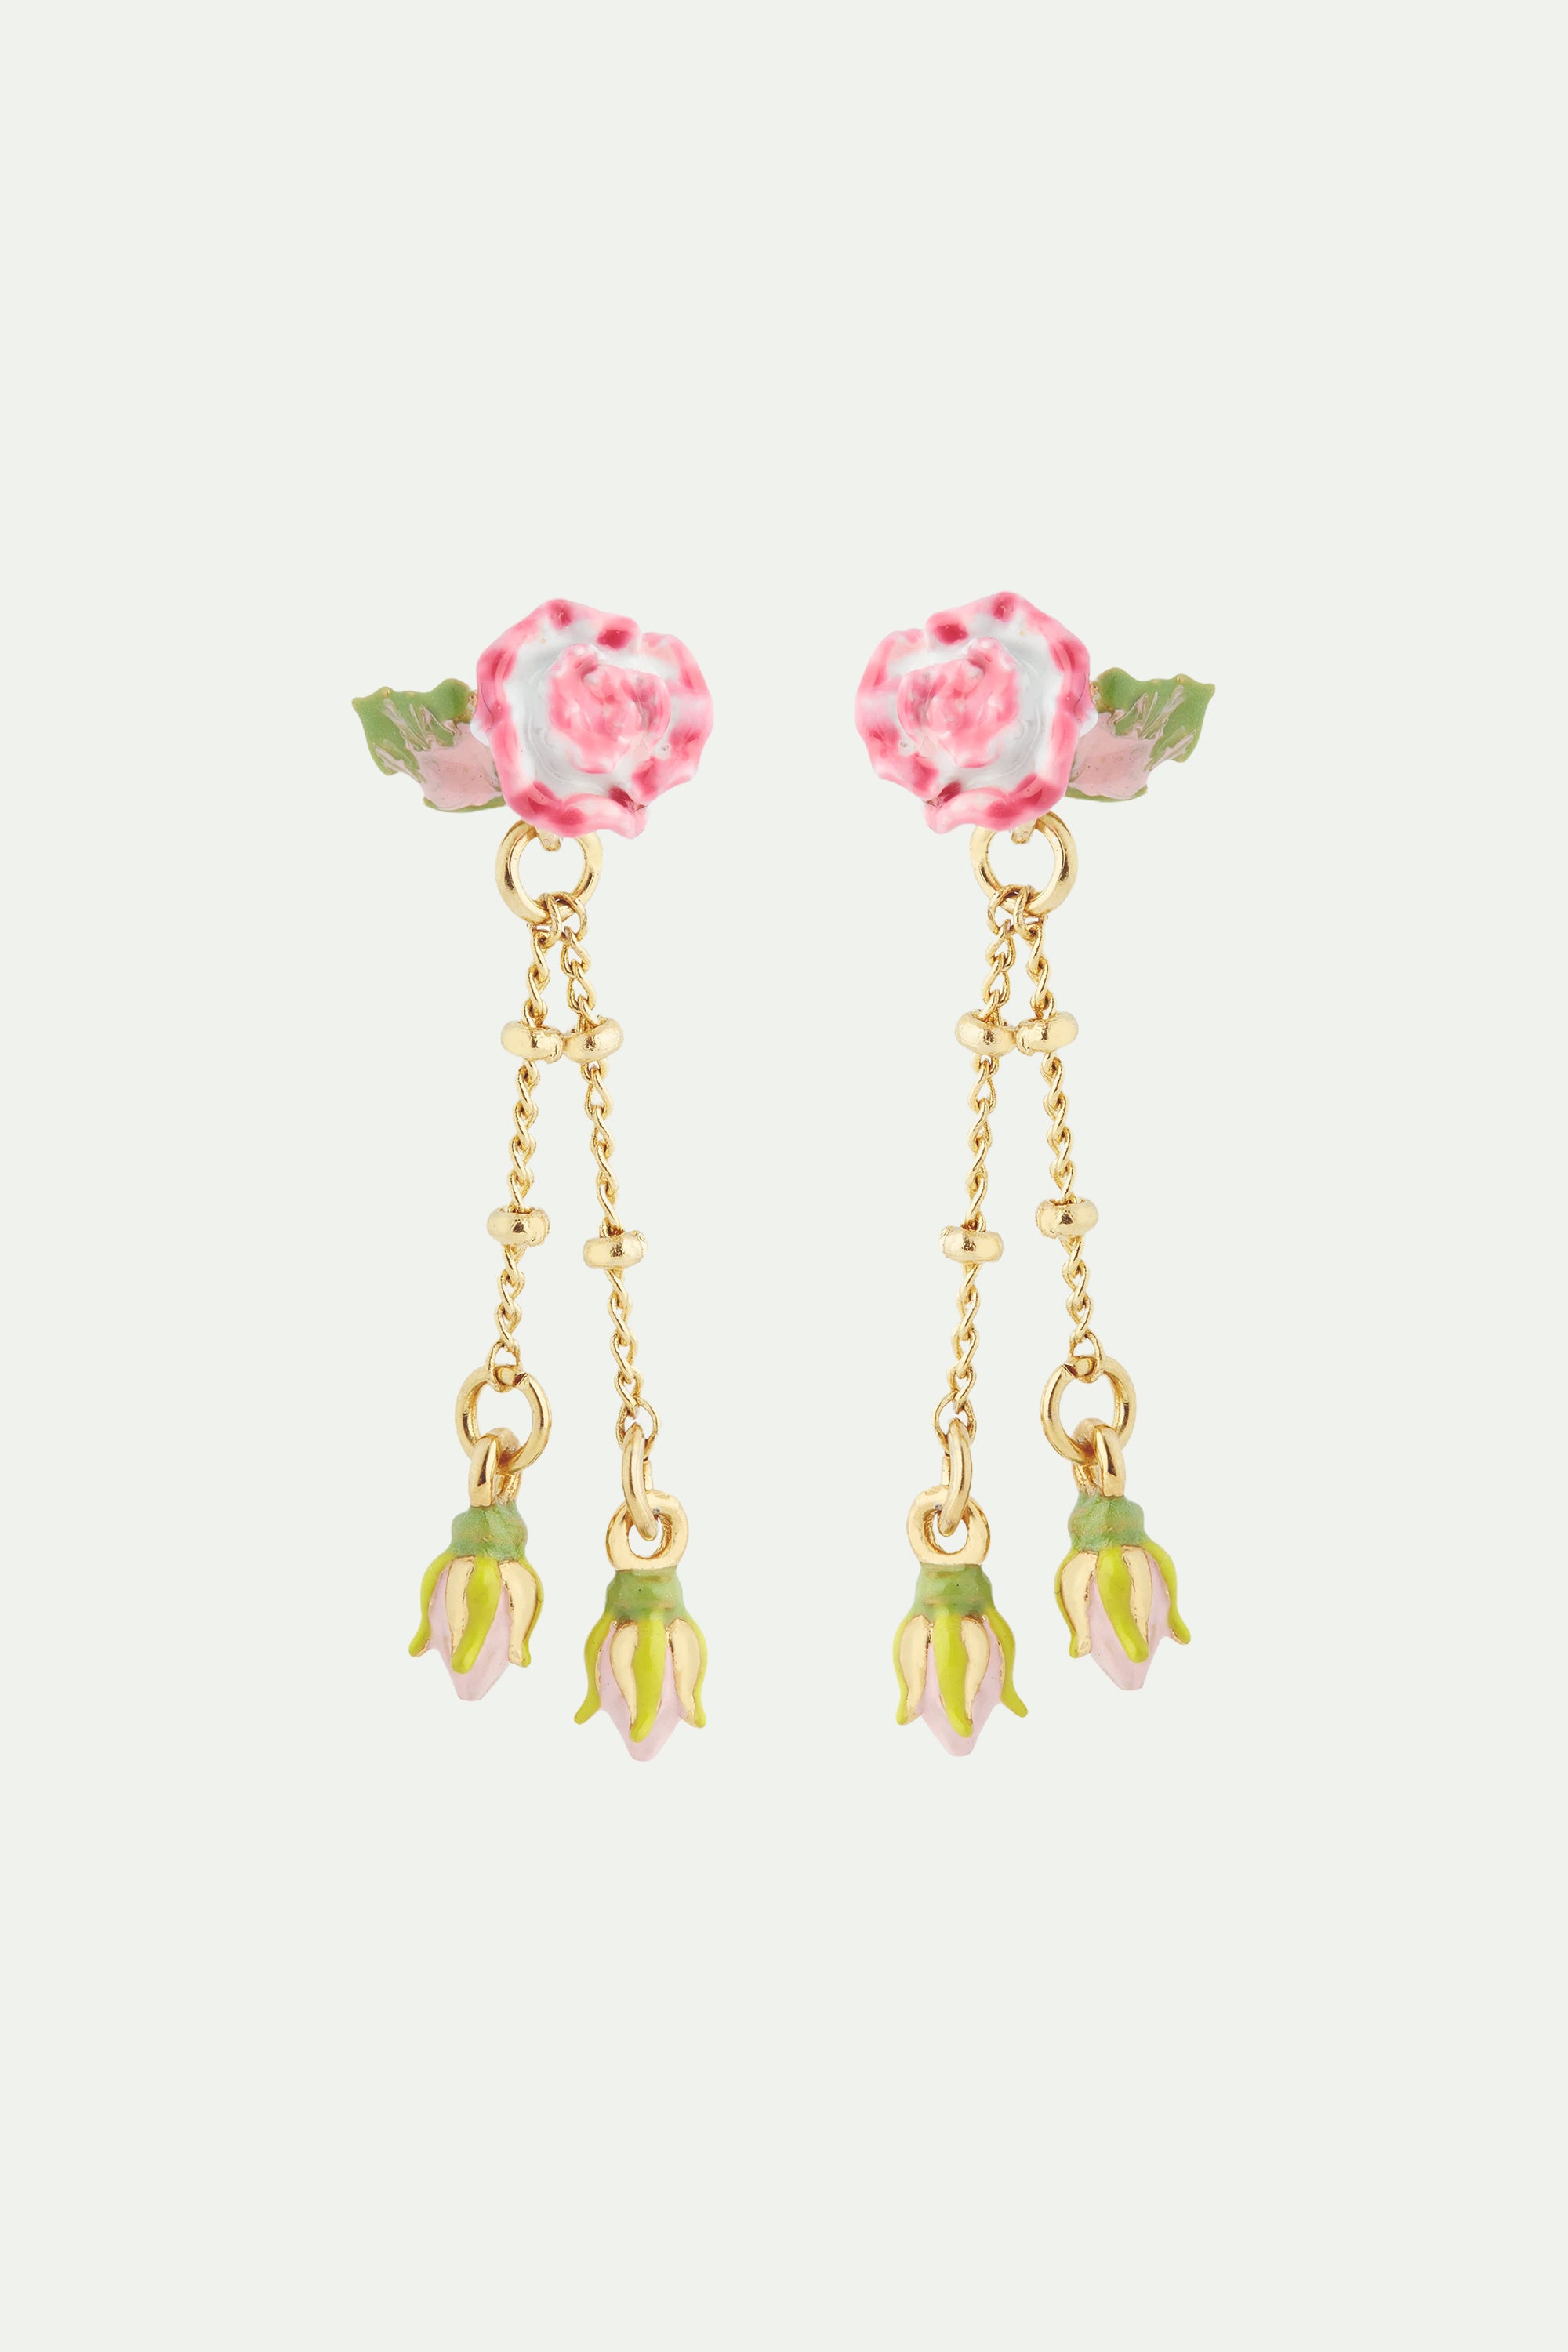 Rose and rosebud dangling post earrings